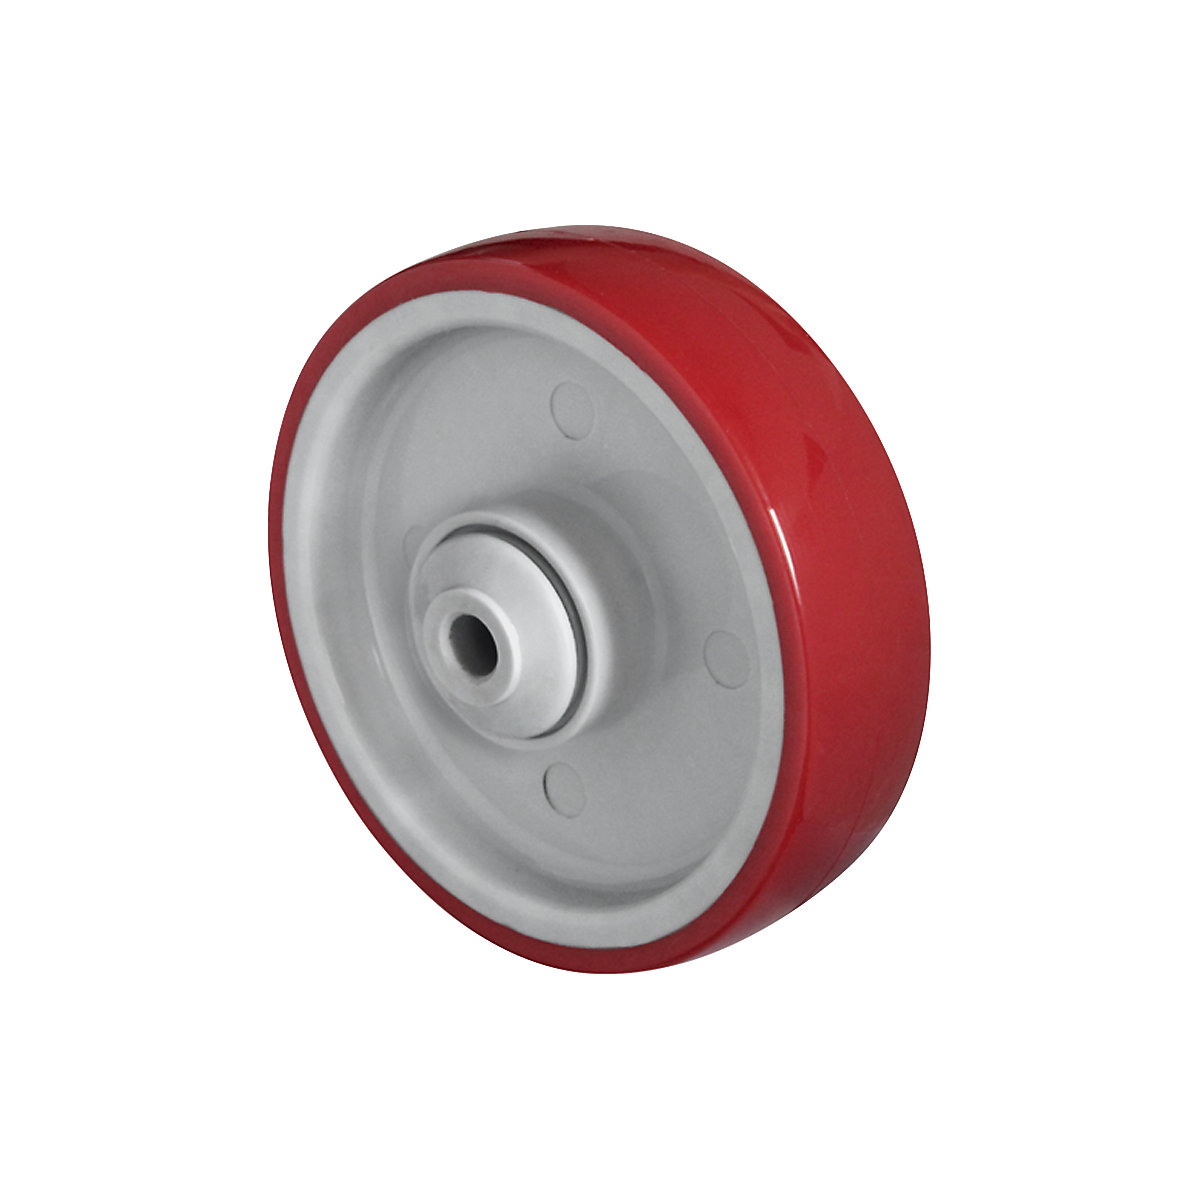 Roue en PU rouge sur jante en polyamide, roulement à billes, à partir de 2 pièces, Ø x largeur roue 125 x 32 mm-3